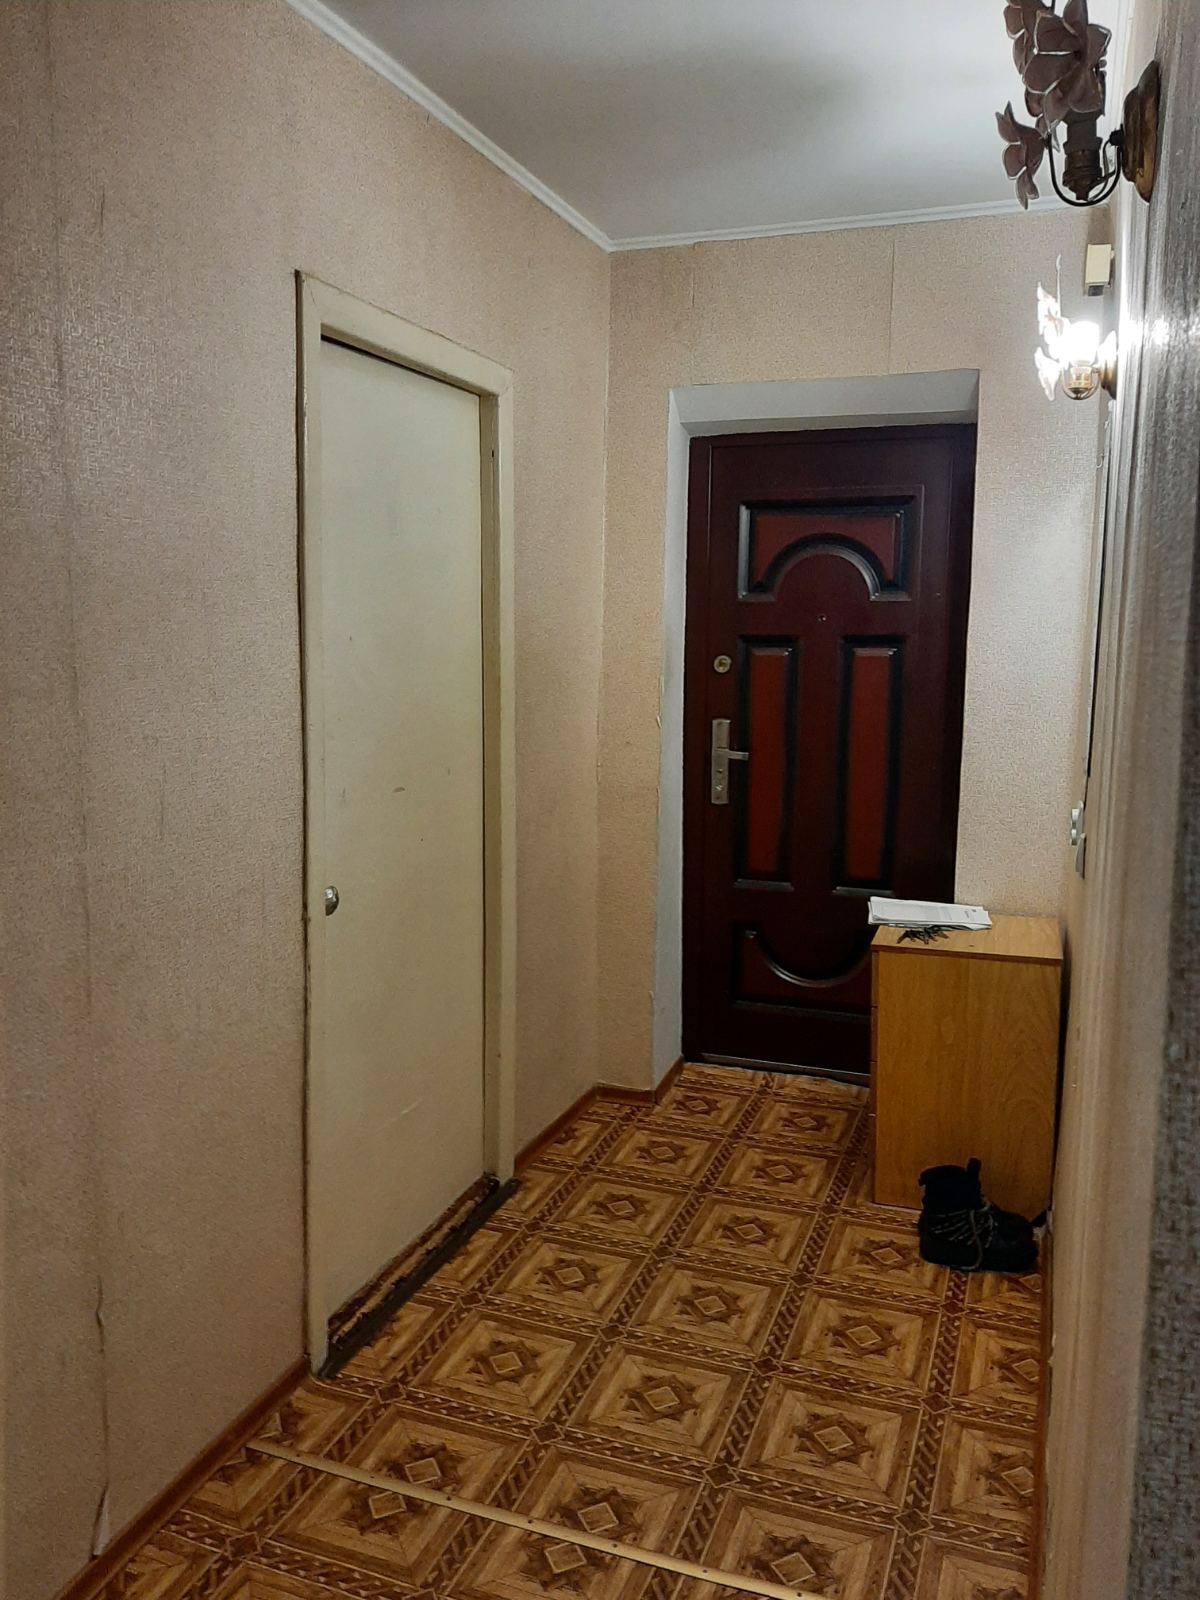 Аренда, Аренда 2-х комнатной квартиры в Леске код №111731021